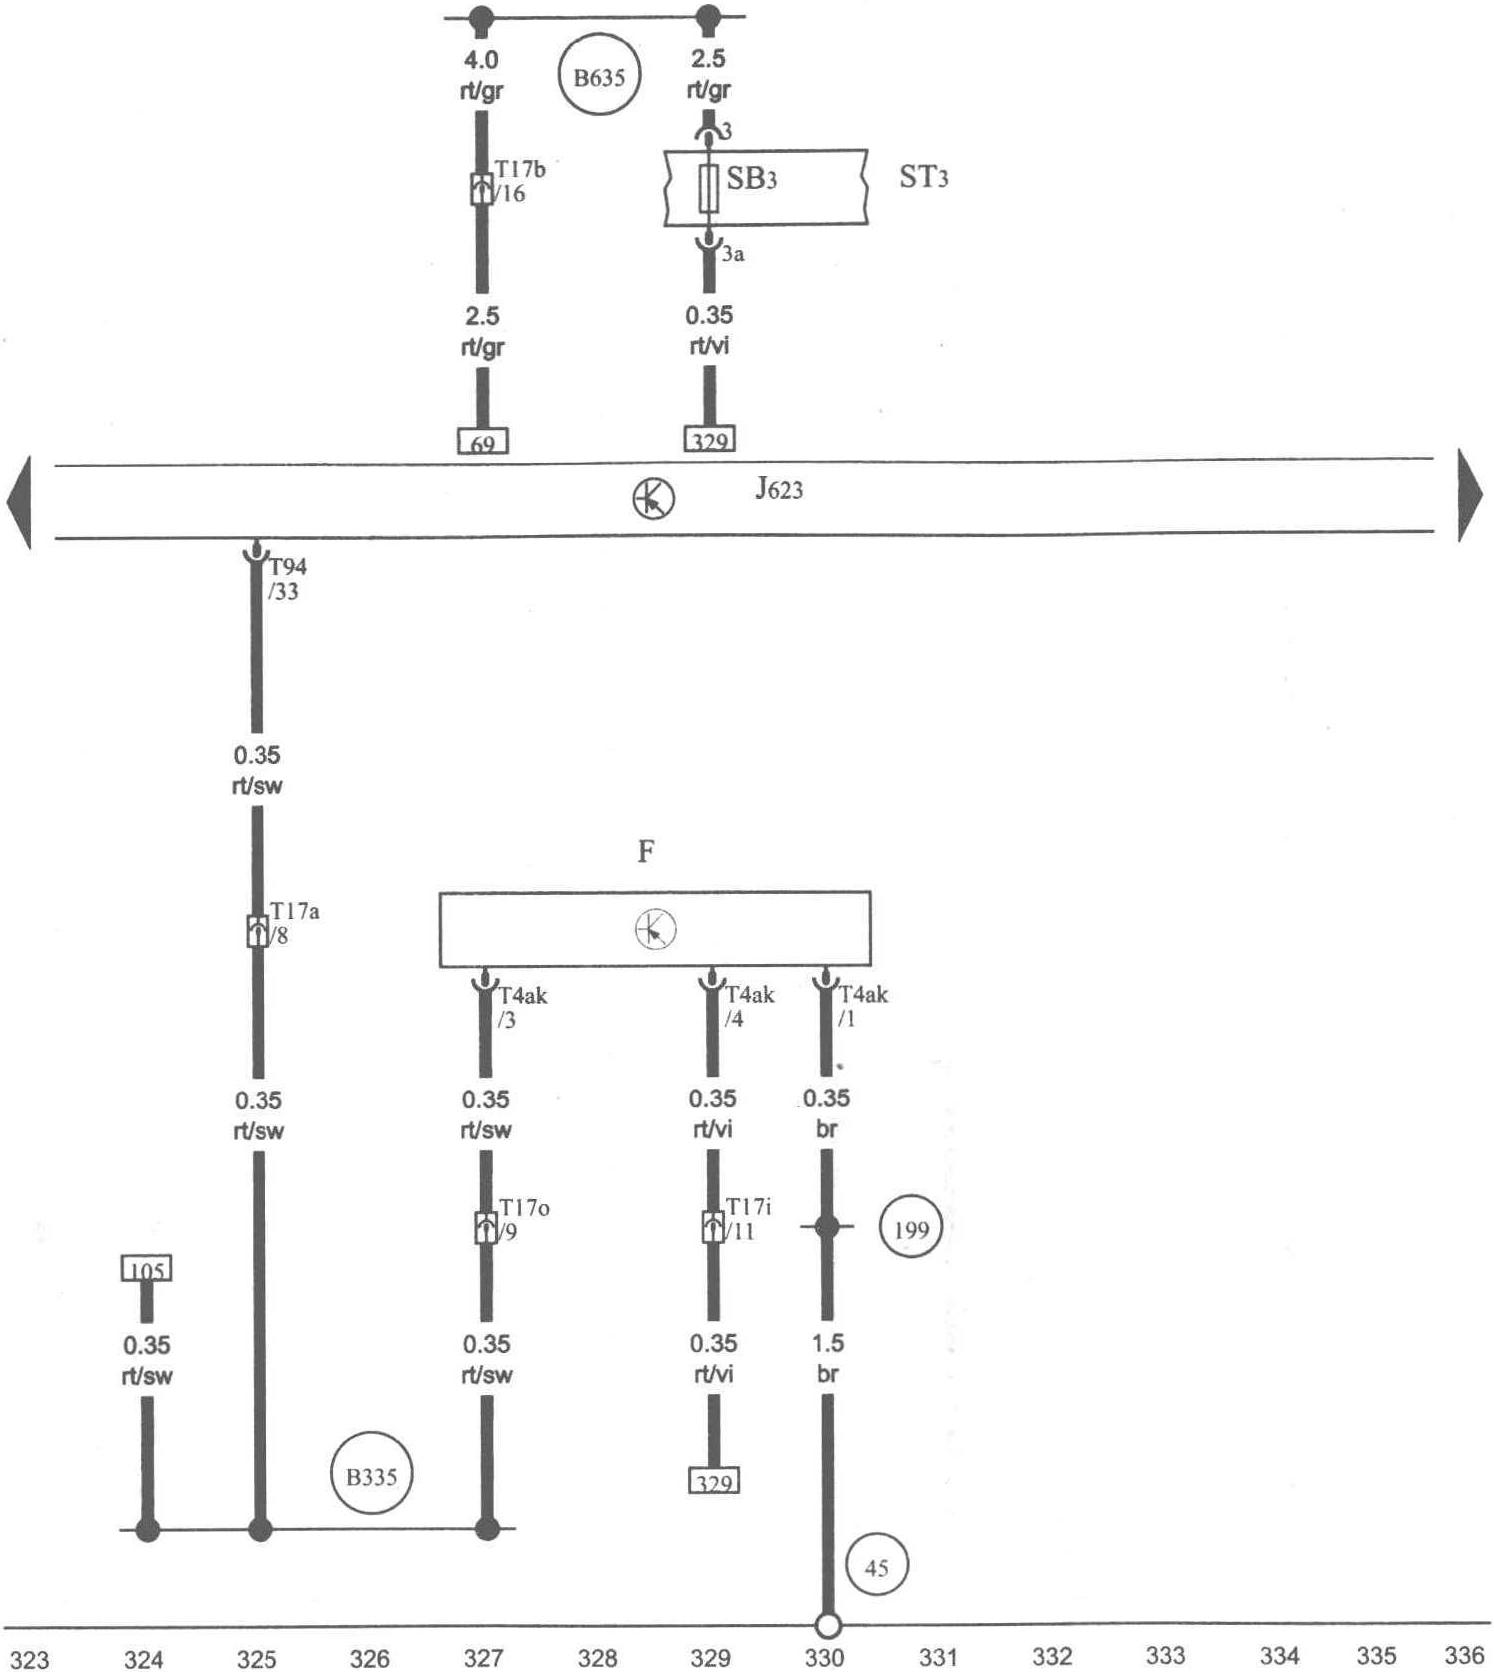 图1-1-24 制动信号灯开关、发动机控制单元